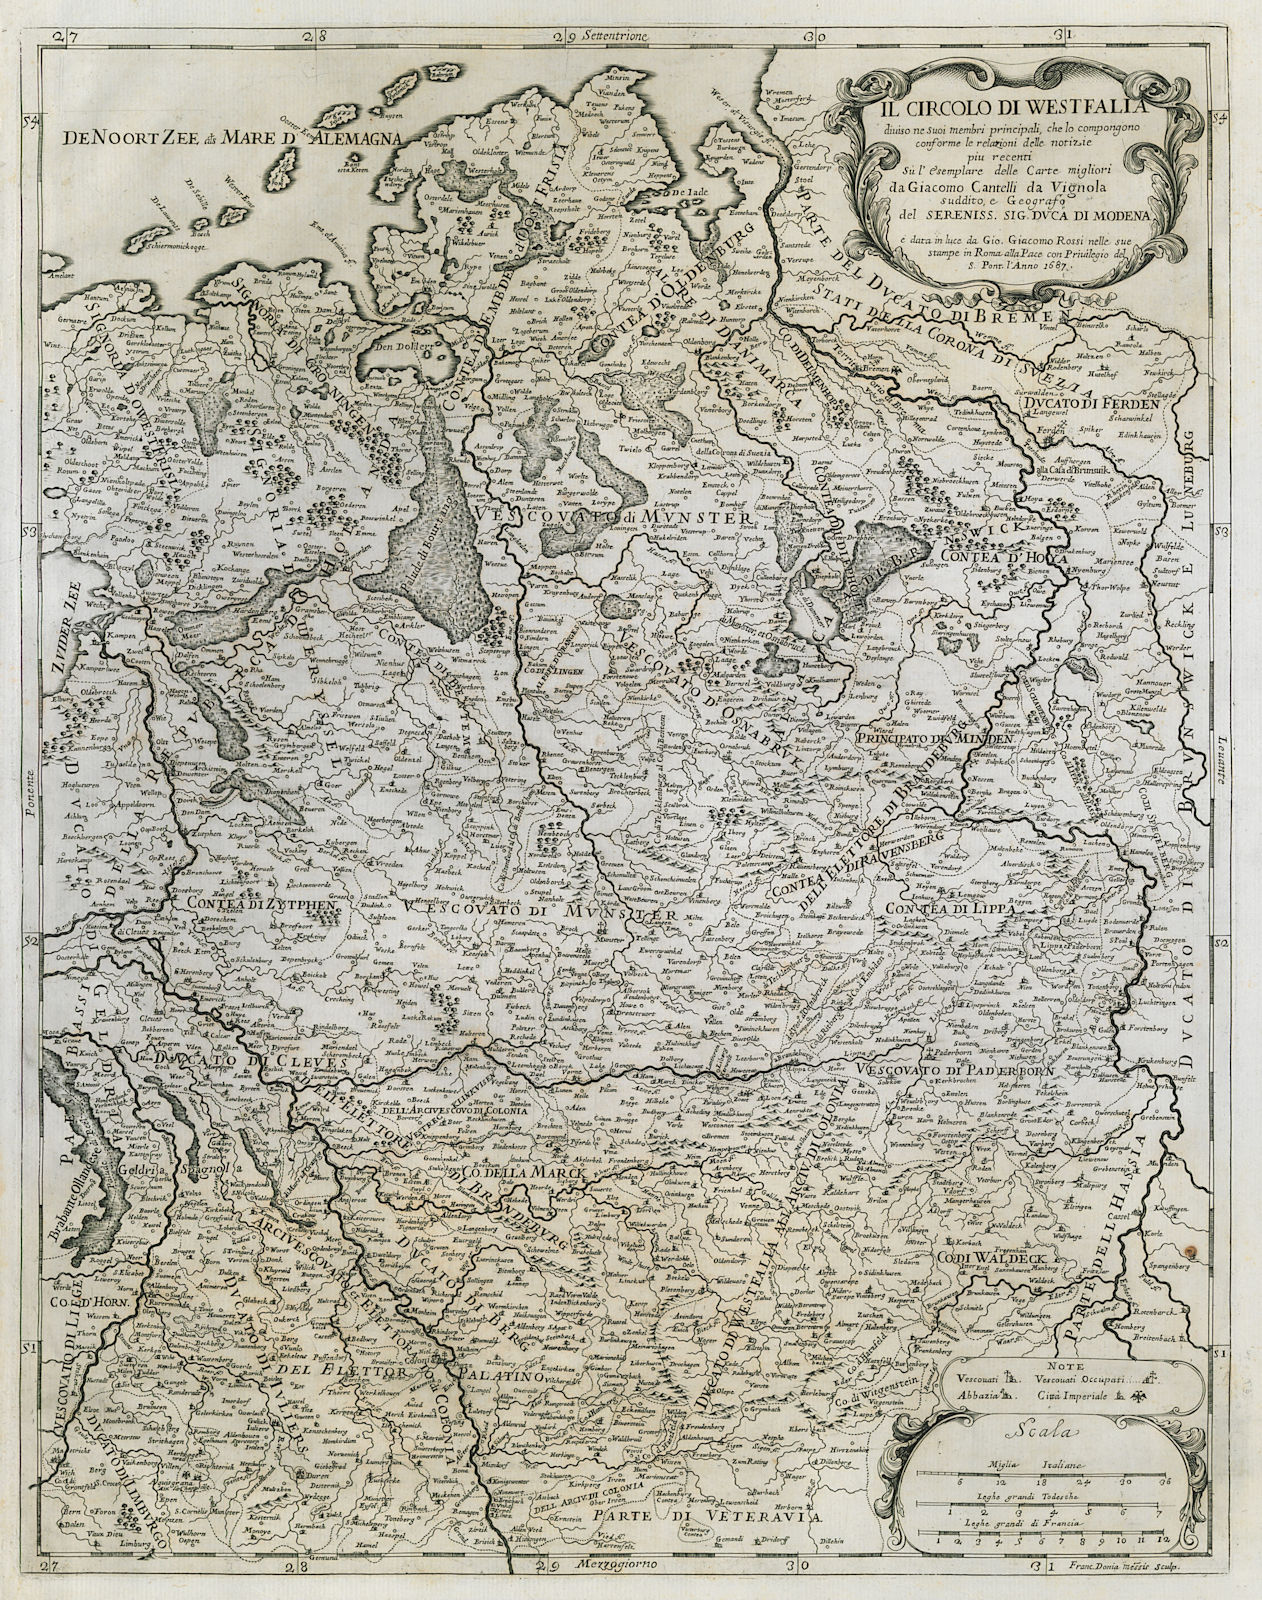 Il Circolo di Westfalia. Westphalia / Lower Saxony. DE ROSSI / CANTELLI 1687 map